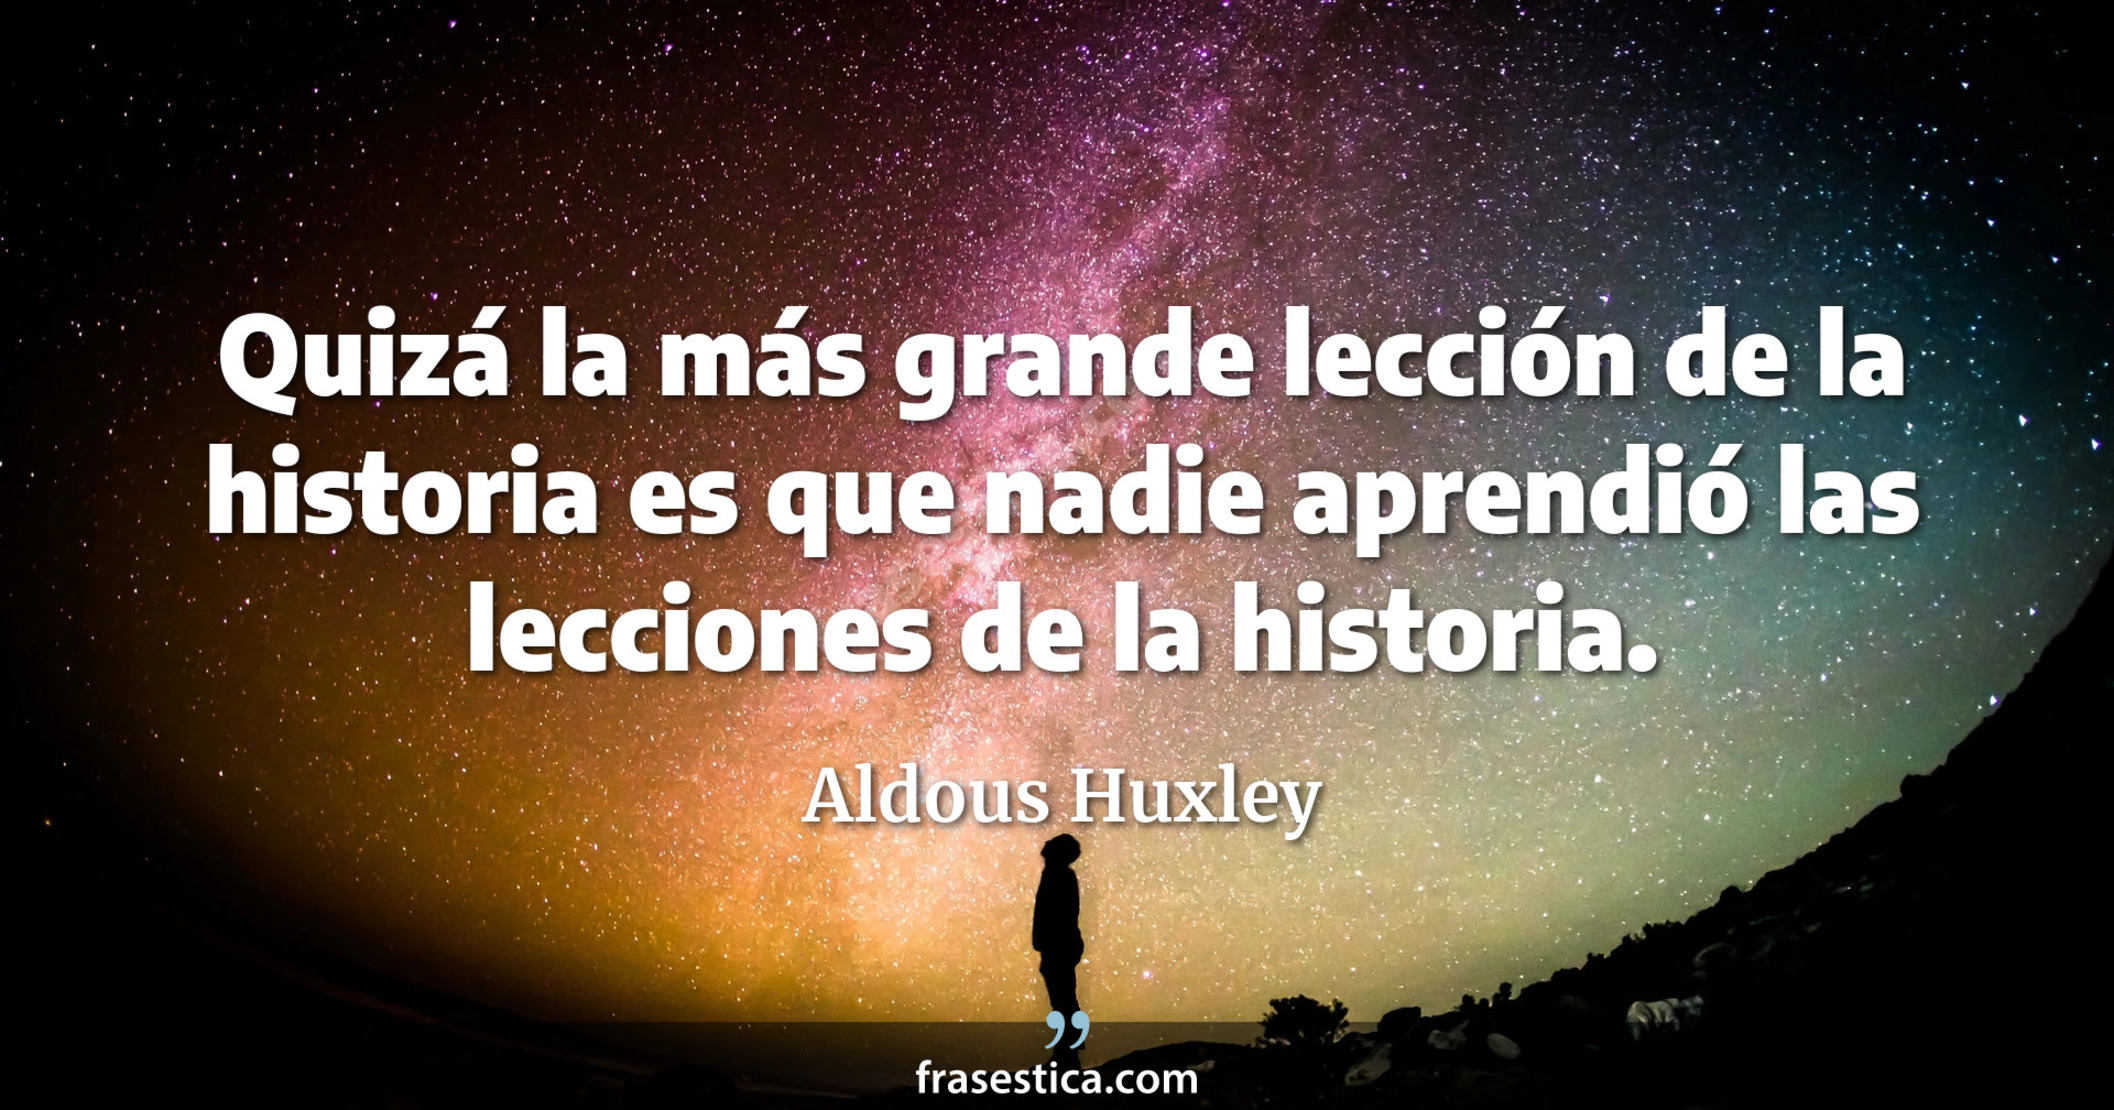 Quizá la más grande lección de la historia es que nadie aprendió las lecciones de la historia. - Aldous Huxley